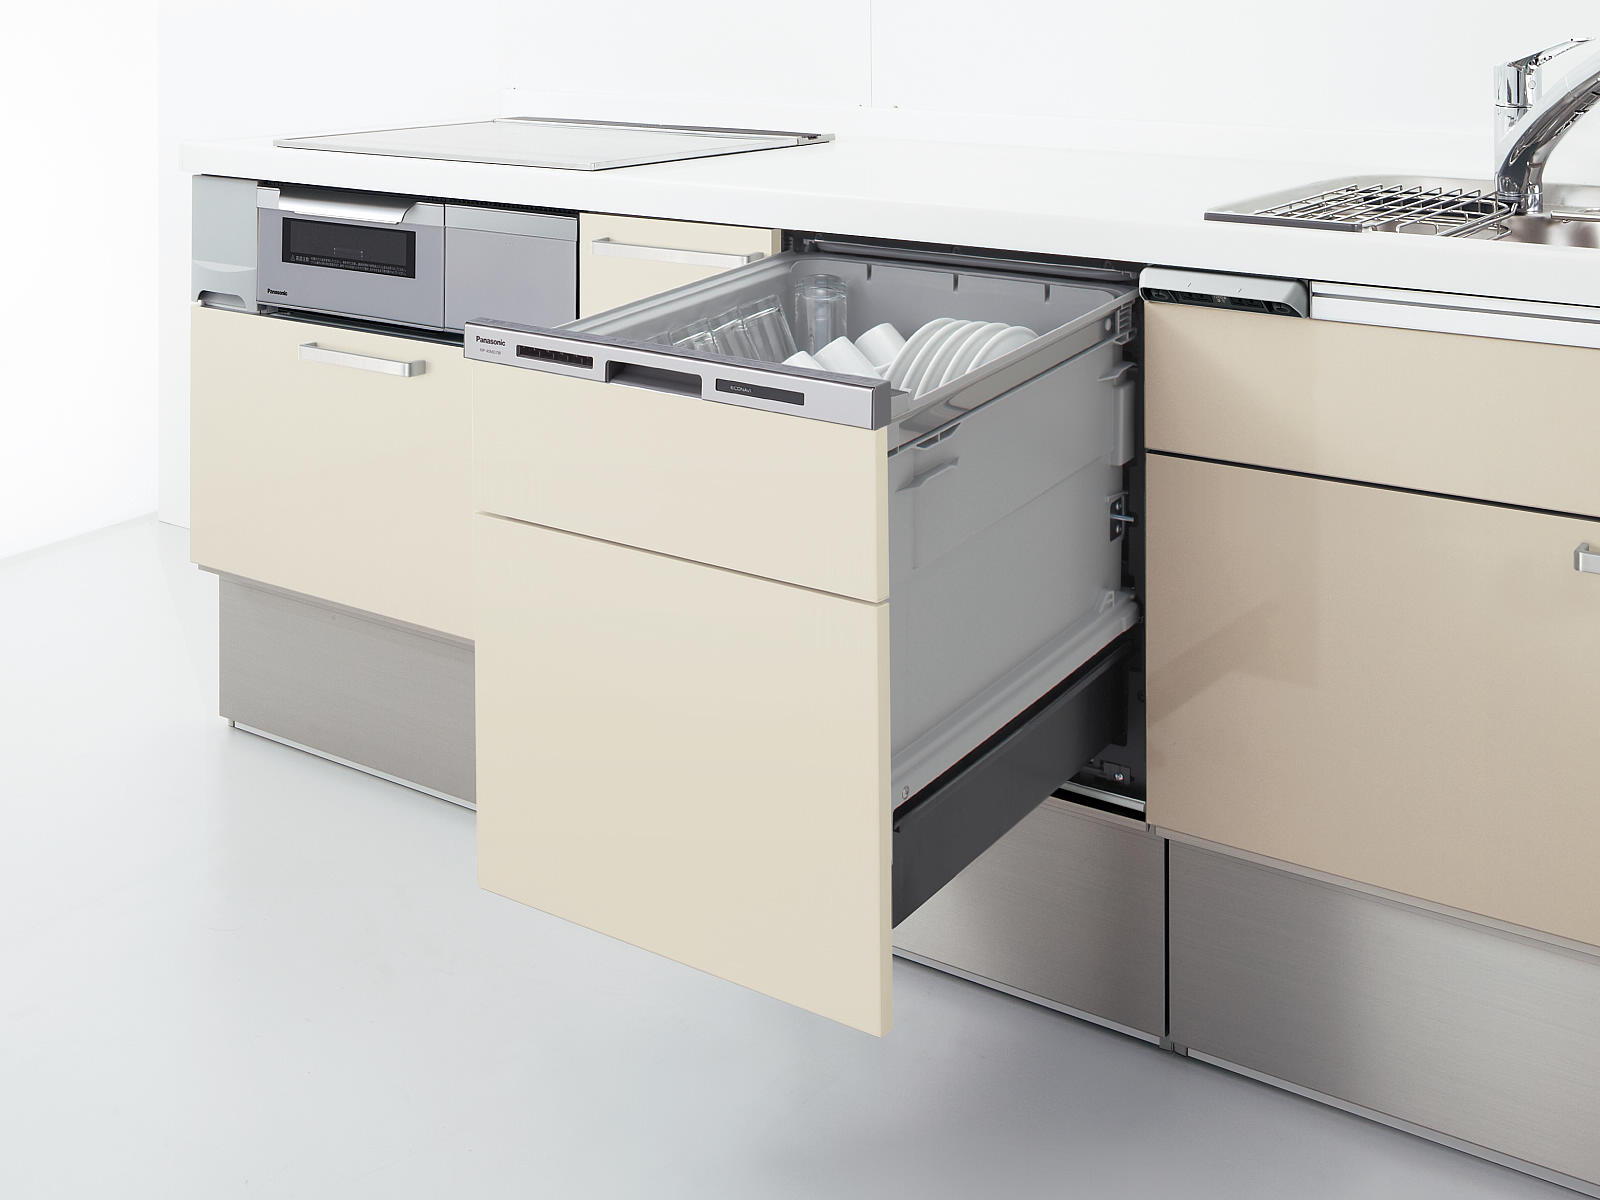 ビルトイン式電気食器洗機（ビルトイン食器洗い乾燥機）「S45MD9W2」